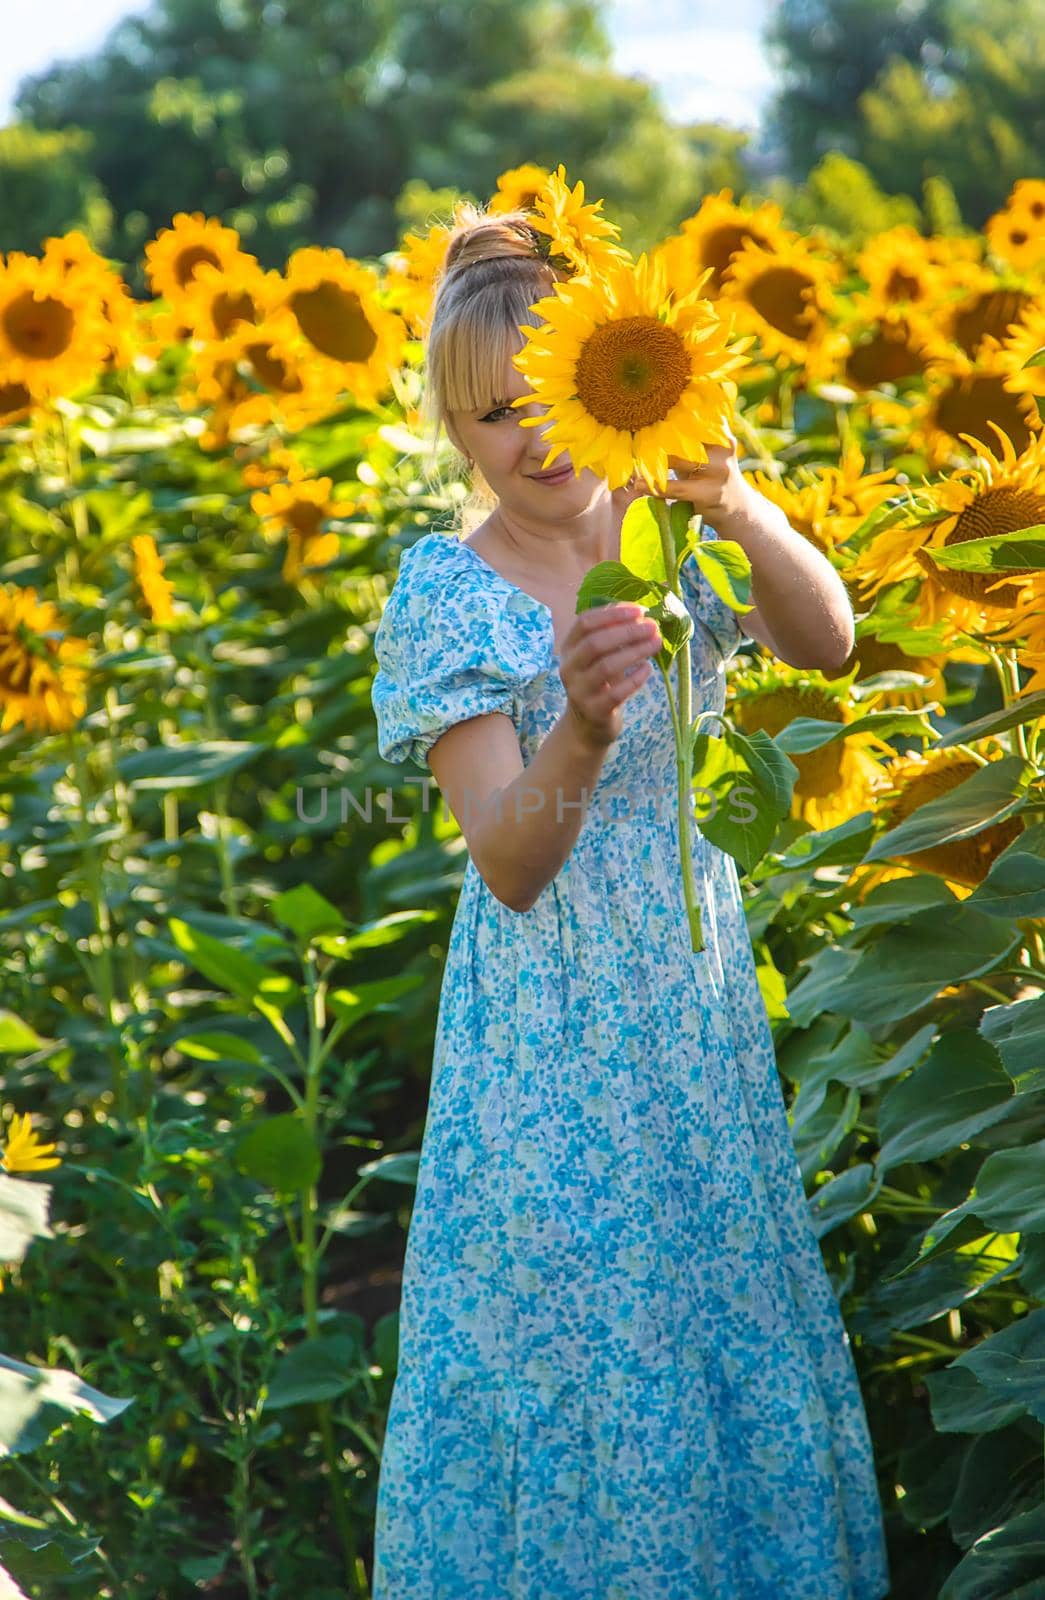 Woman in a field of sunflowers. Ukraine. Selective focus. by yanadjana